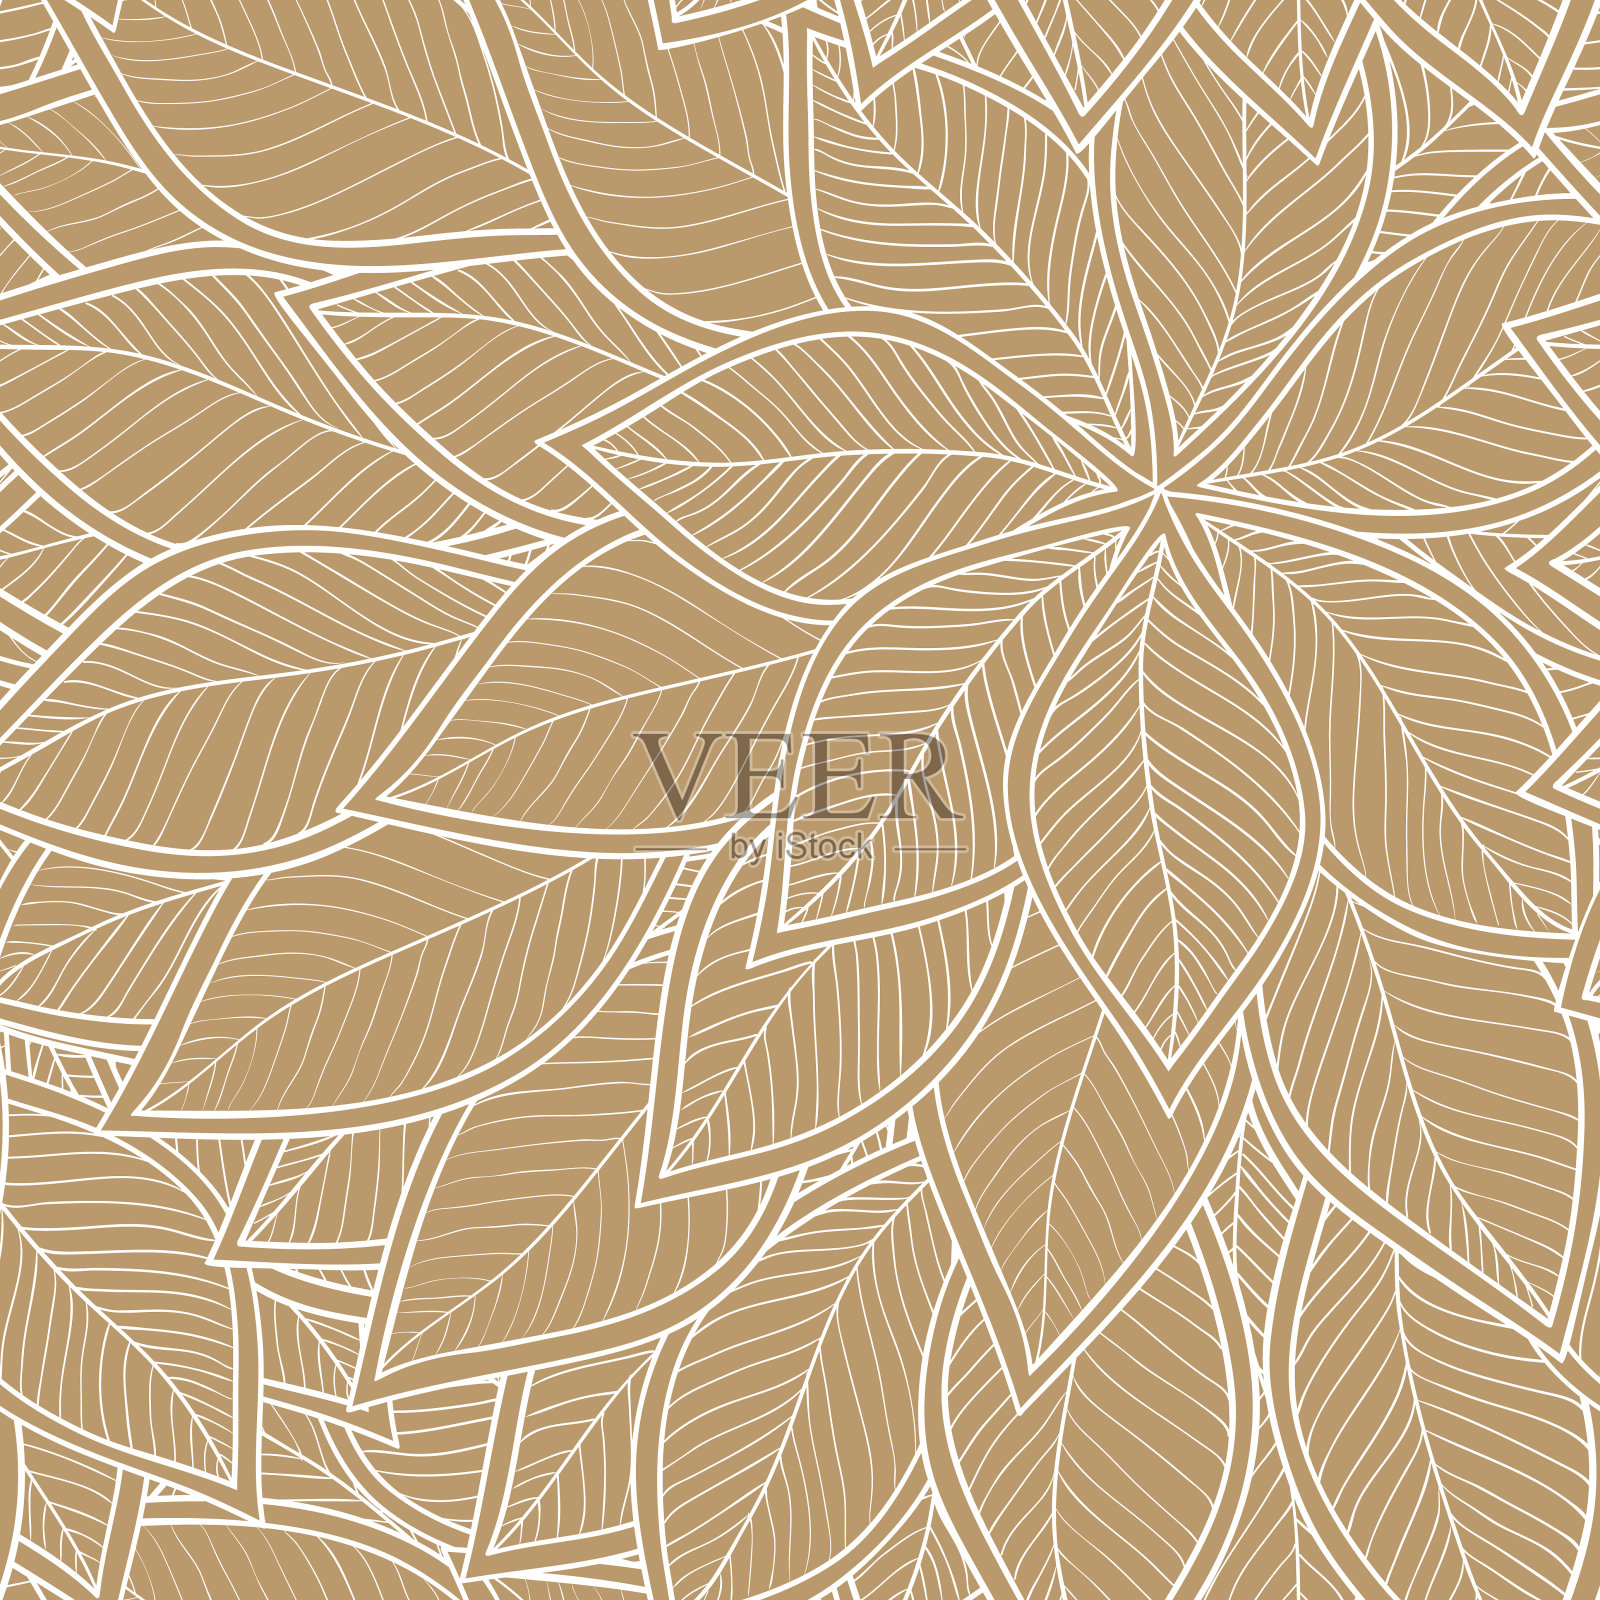 抽象褐色无缝图案与叶。向量插画图片素材